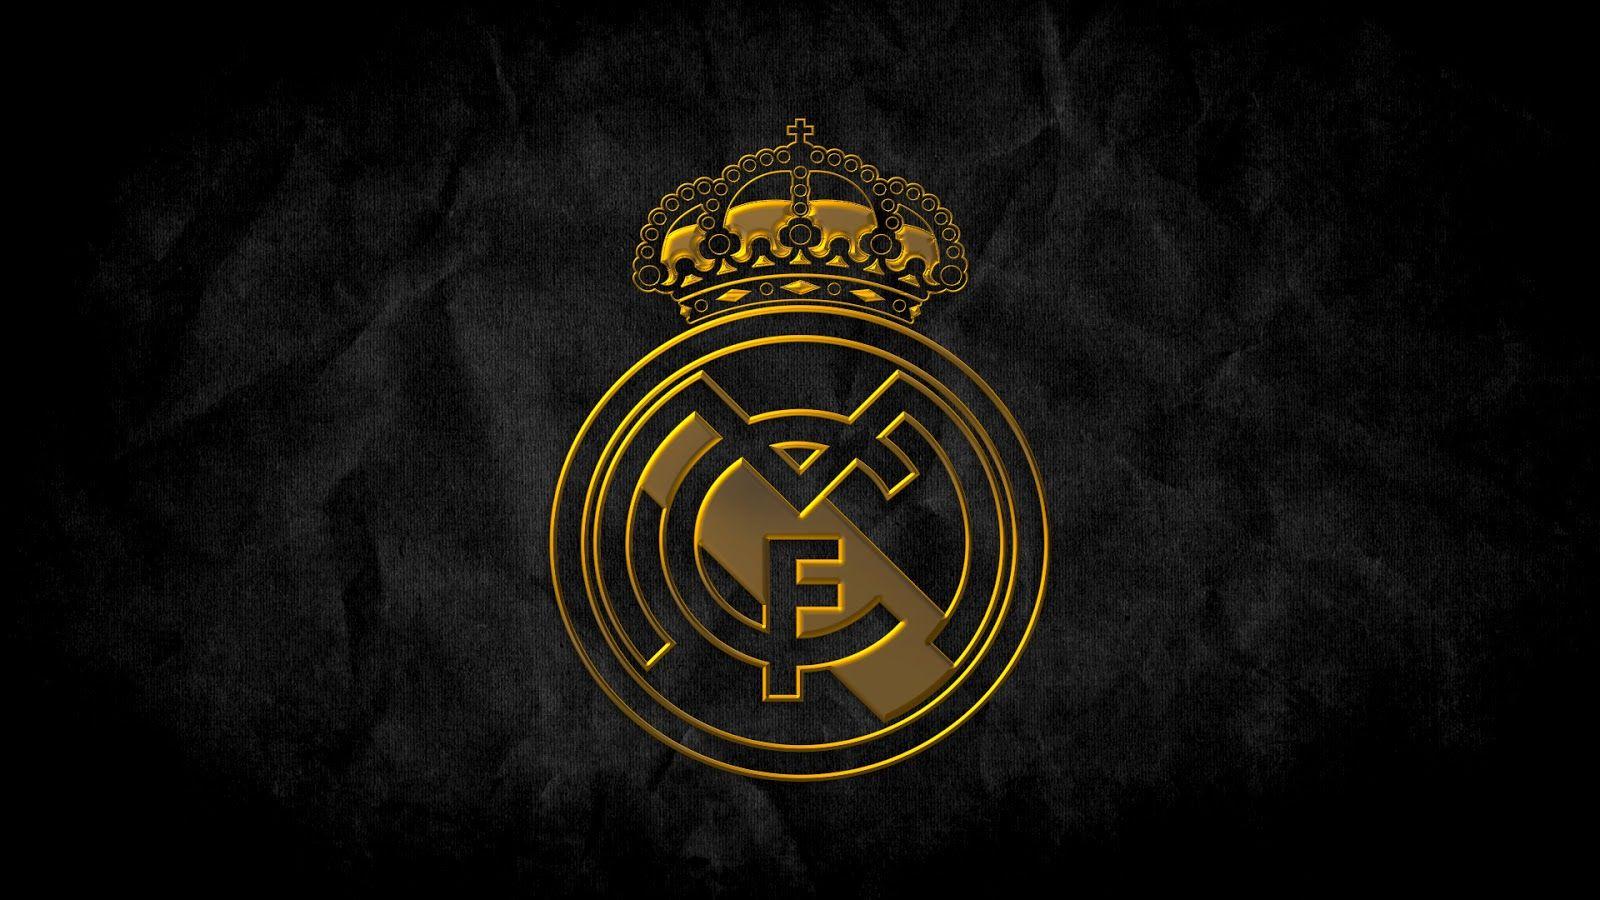 Real Madrid HD wallpapers là sự lựa chọn hoàn hảo cho những fan của đội bóng nổi tiếng này. Với độ sắc nét và độ phân giải cao, bạn sẽ được chiêm ngưỡng những hình nền đẹp nhất về Real Madrid.